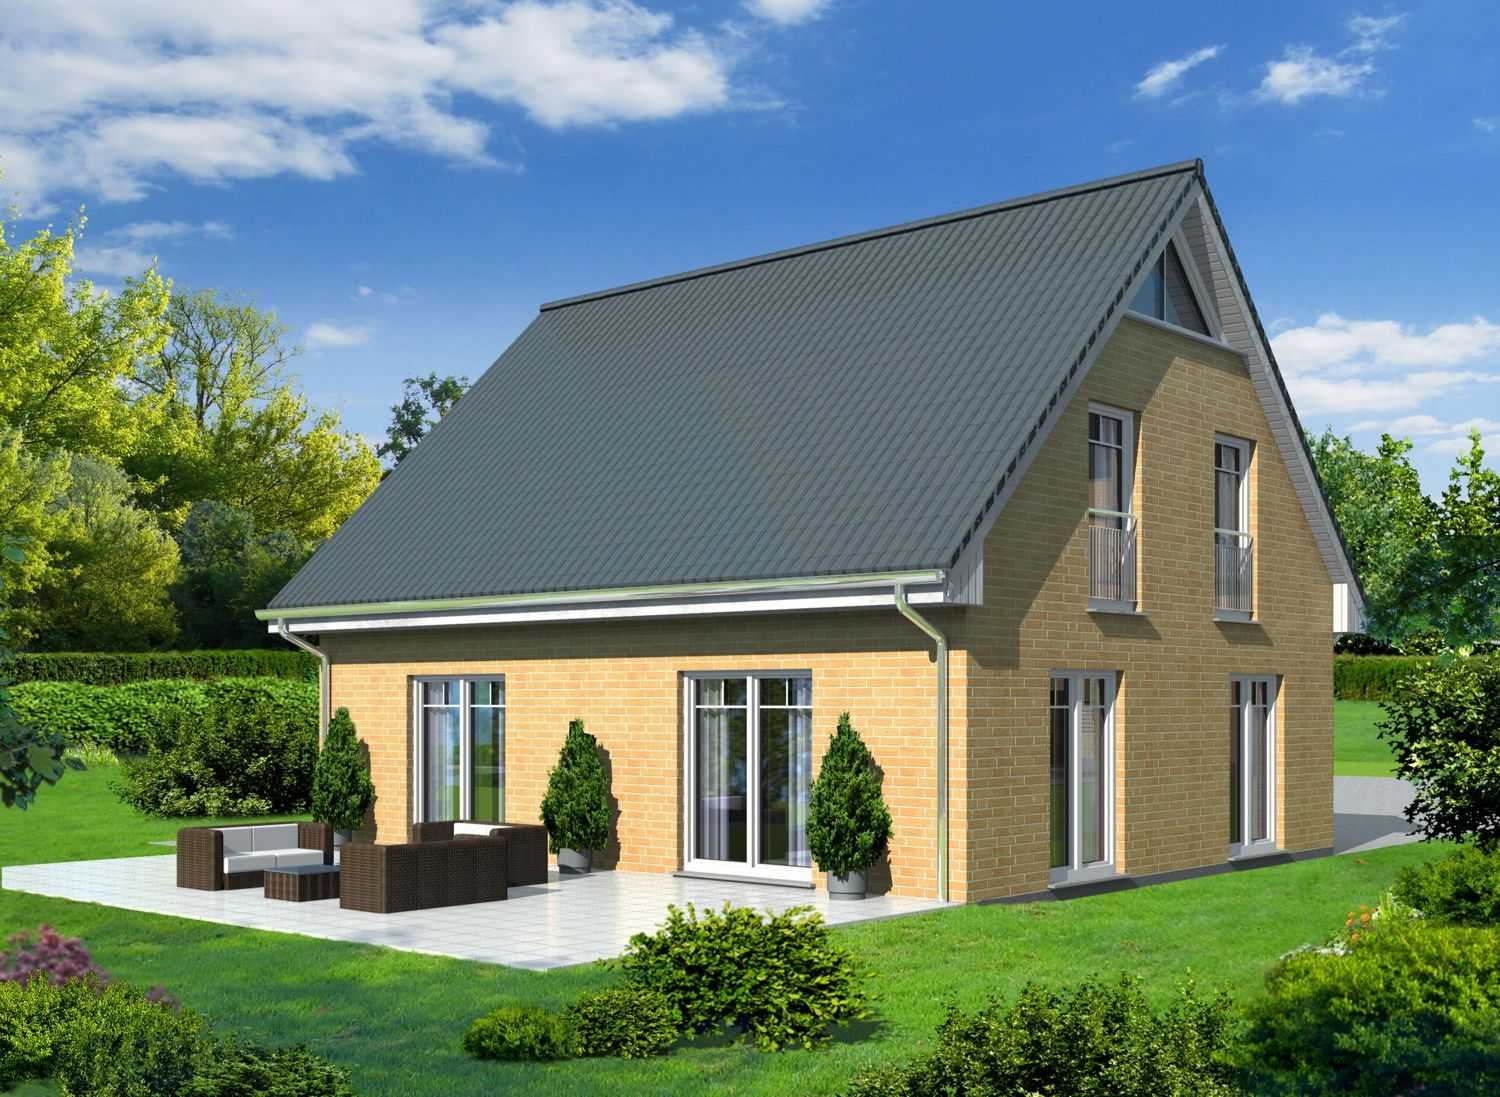 Architekturvisualisierung  eines Muster-Einfamilienhauses mit Satteldach und Fassaden aus Klinker für die Firma BRALE (Jahr 2011)